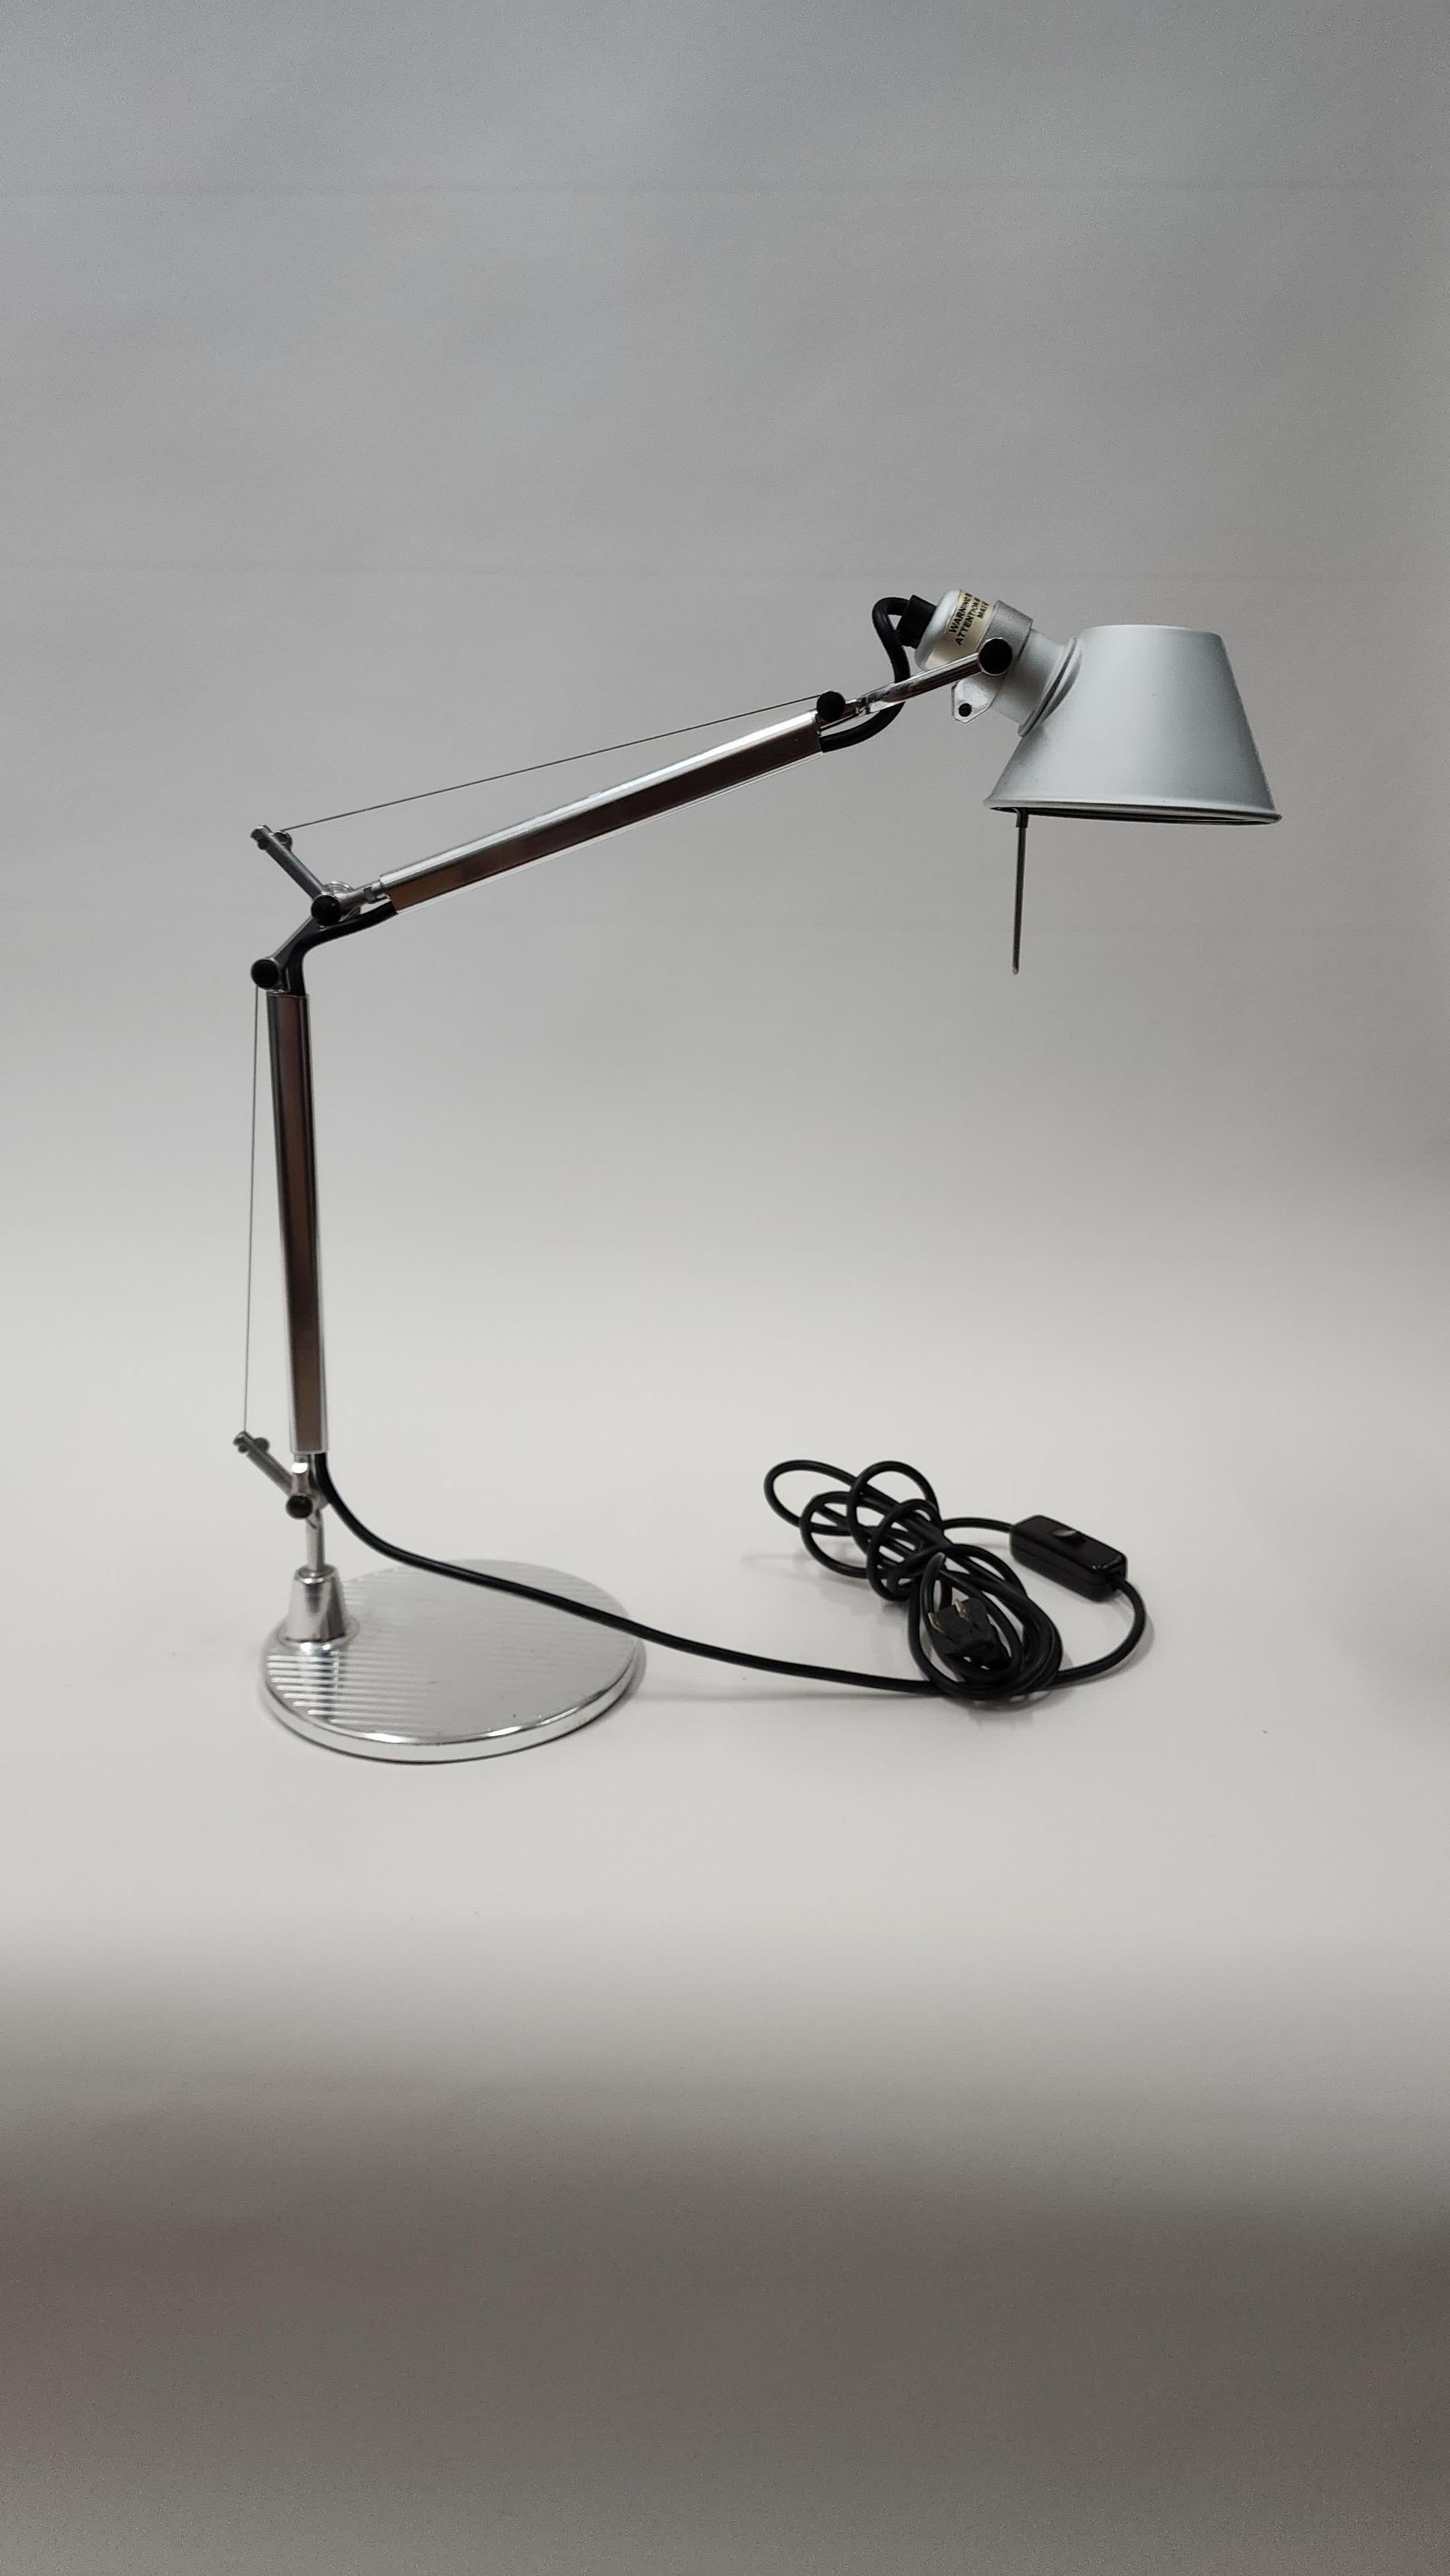 La lampada da tavolo Tolomeo Micro offre un'illuminazione superba in un design più piccolo del 40% rispetto alle dimensioni classiche. Disegnata da Michele De Lucchi e Giancarlo Fassina, la lampada da tavolo Tolomeo Micro presenta le stesse